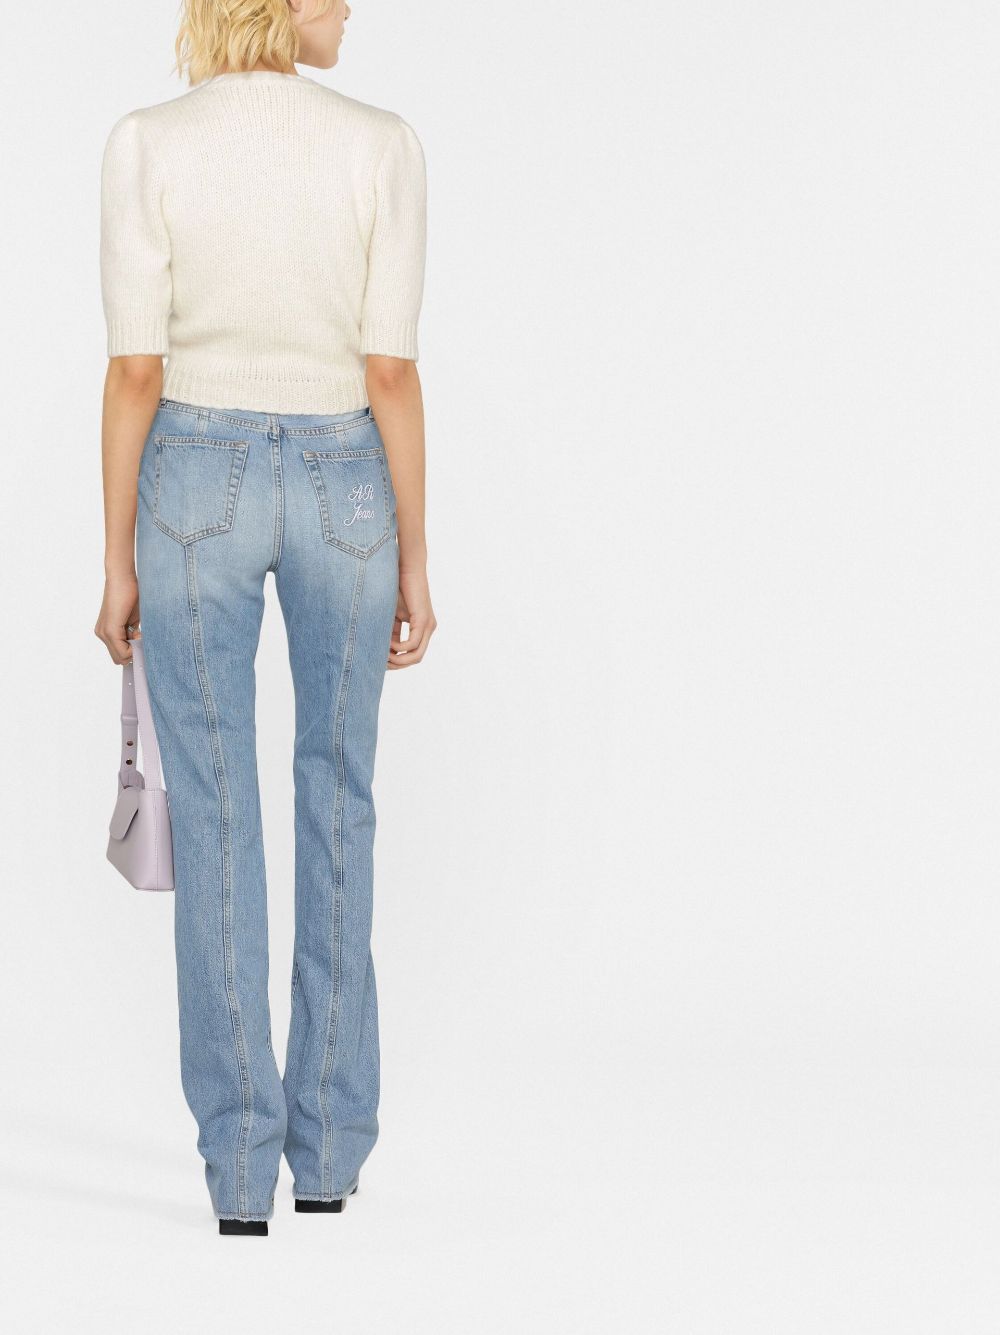 Jeans svasati a vita alta-donna ALESSANDRA RICH | FAB3089F37481733